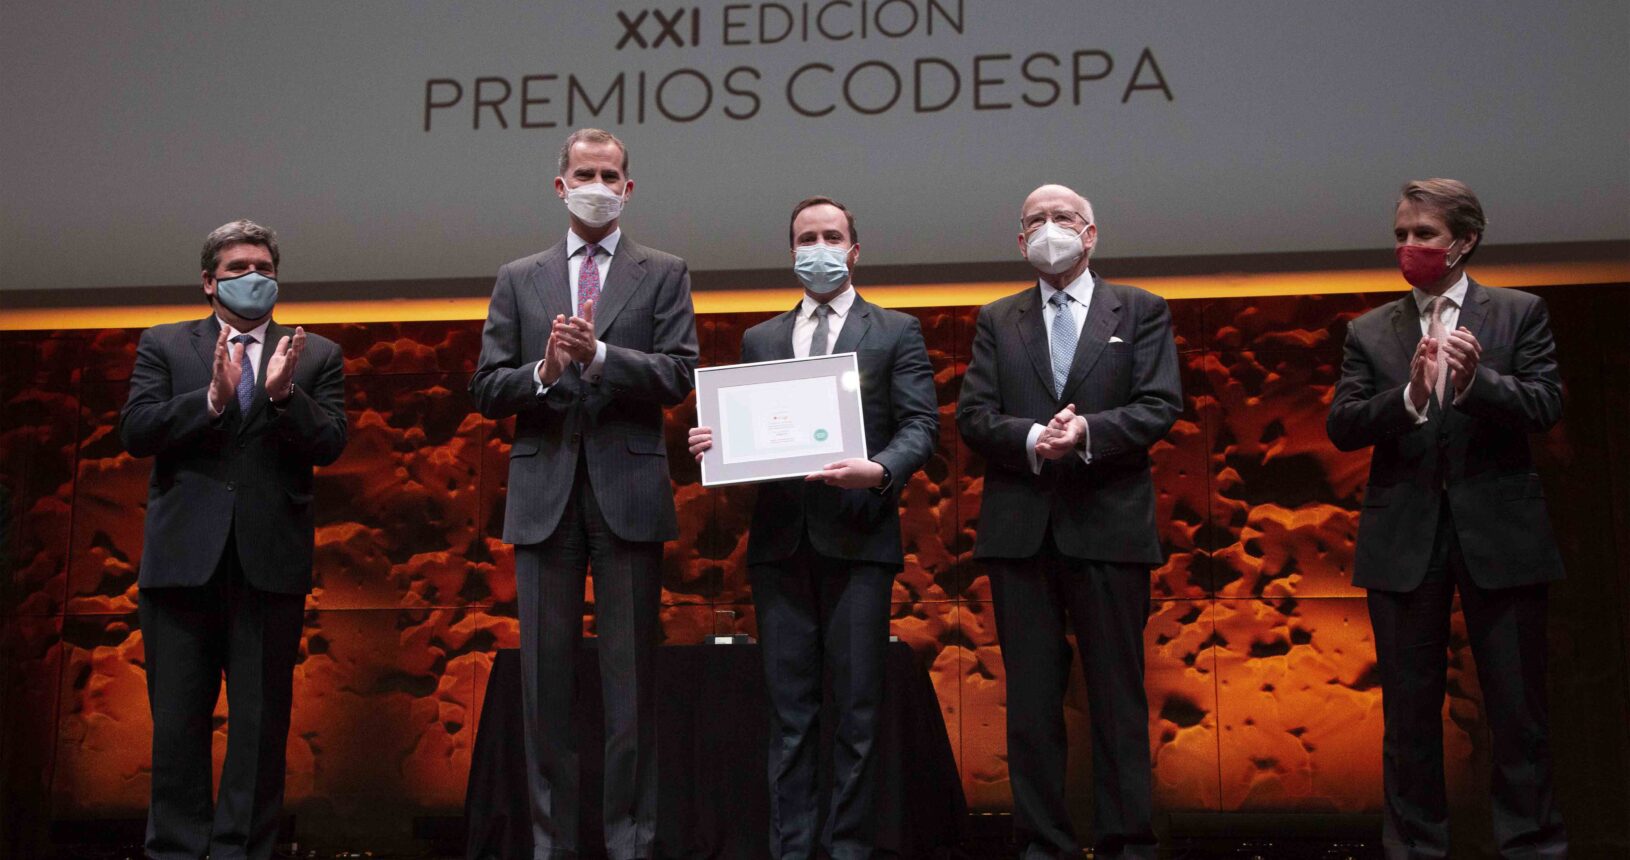 XXI Edición Premios CODESPA (2022)_4